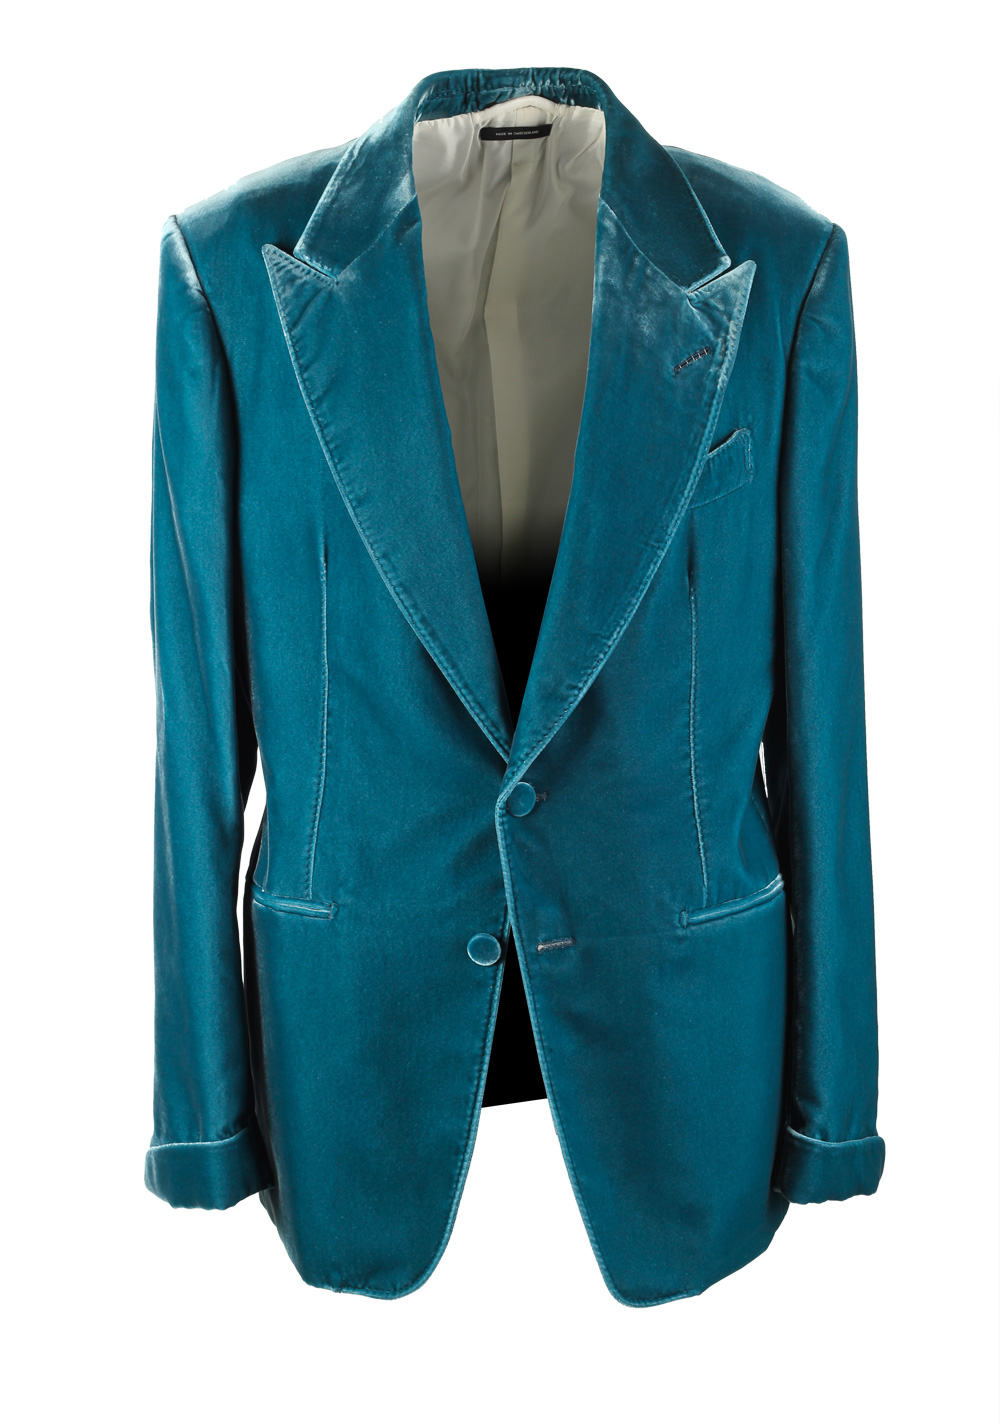 TOM FORD Shelton Velvet Teal Sport Coat Size Size 50 / 40R U.S. | Costume Limité